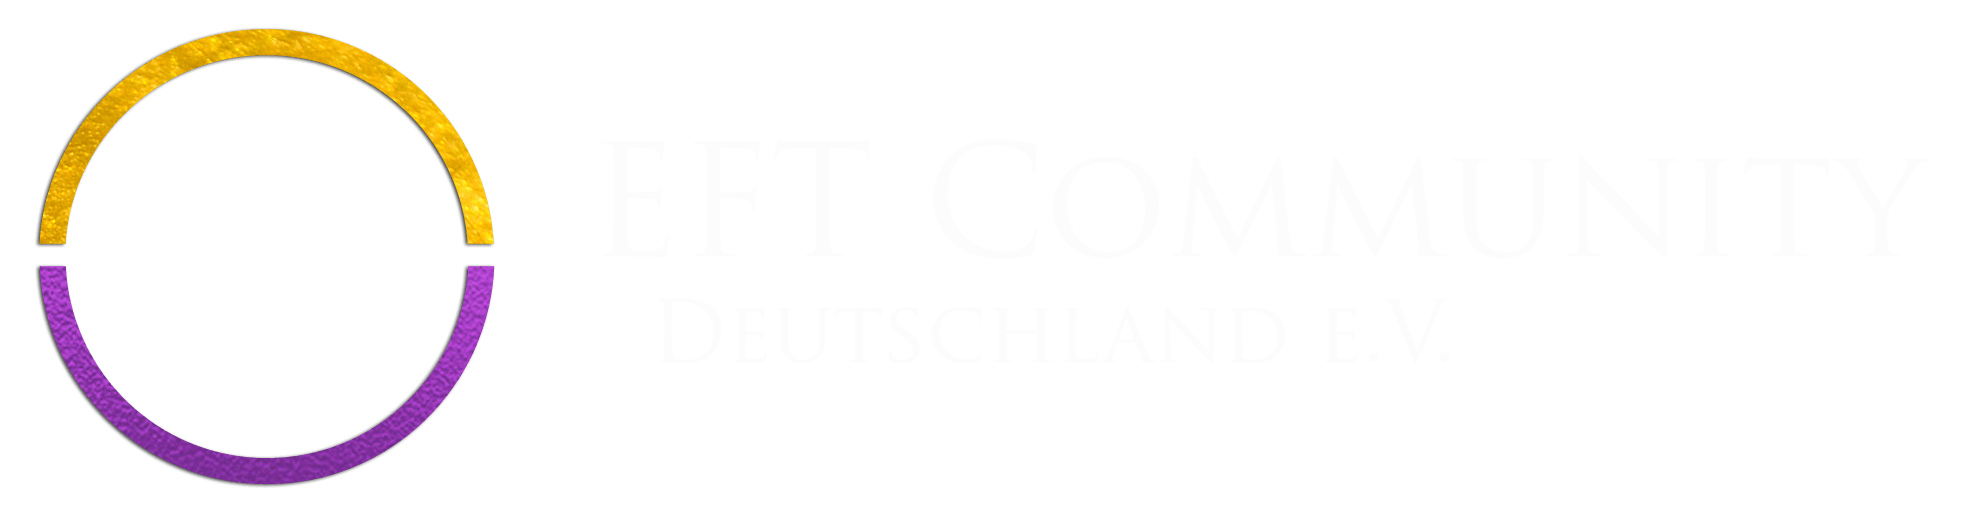 FT Community Deutschland e.V.